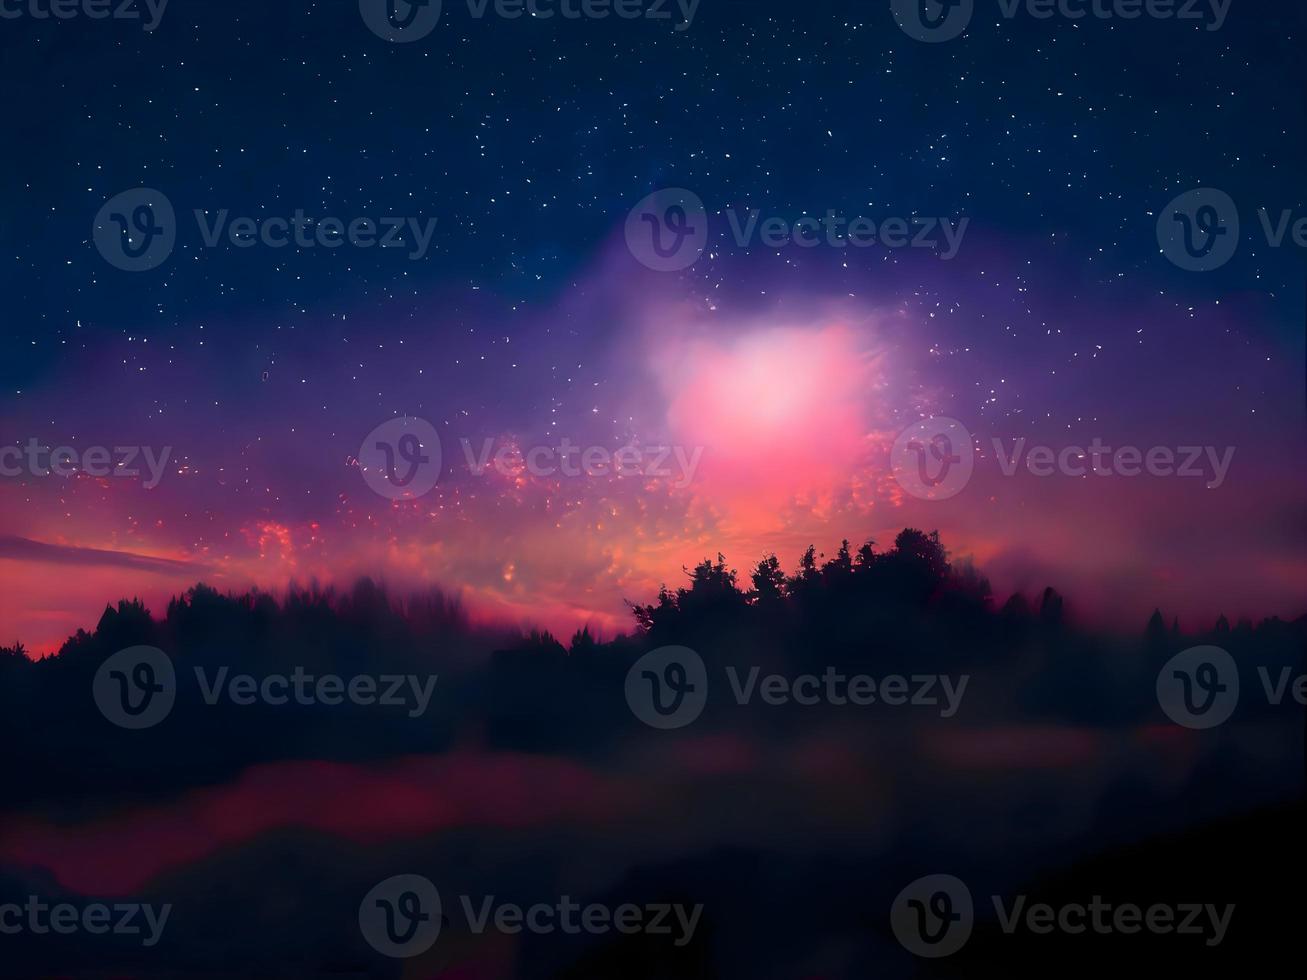 melkweg en roze licht op de bergen. nacht kleurrijk landschap. sterrenhemel met heuvels. prachtig universum. ruimteachtergrond met melkweg. reis achtergrond foto